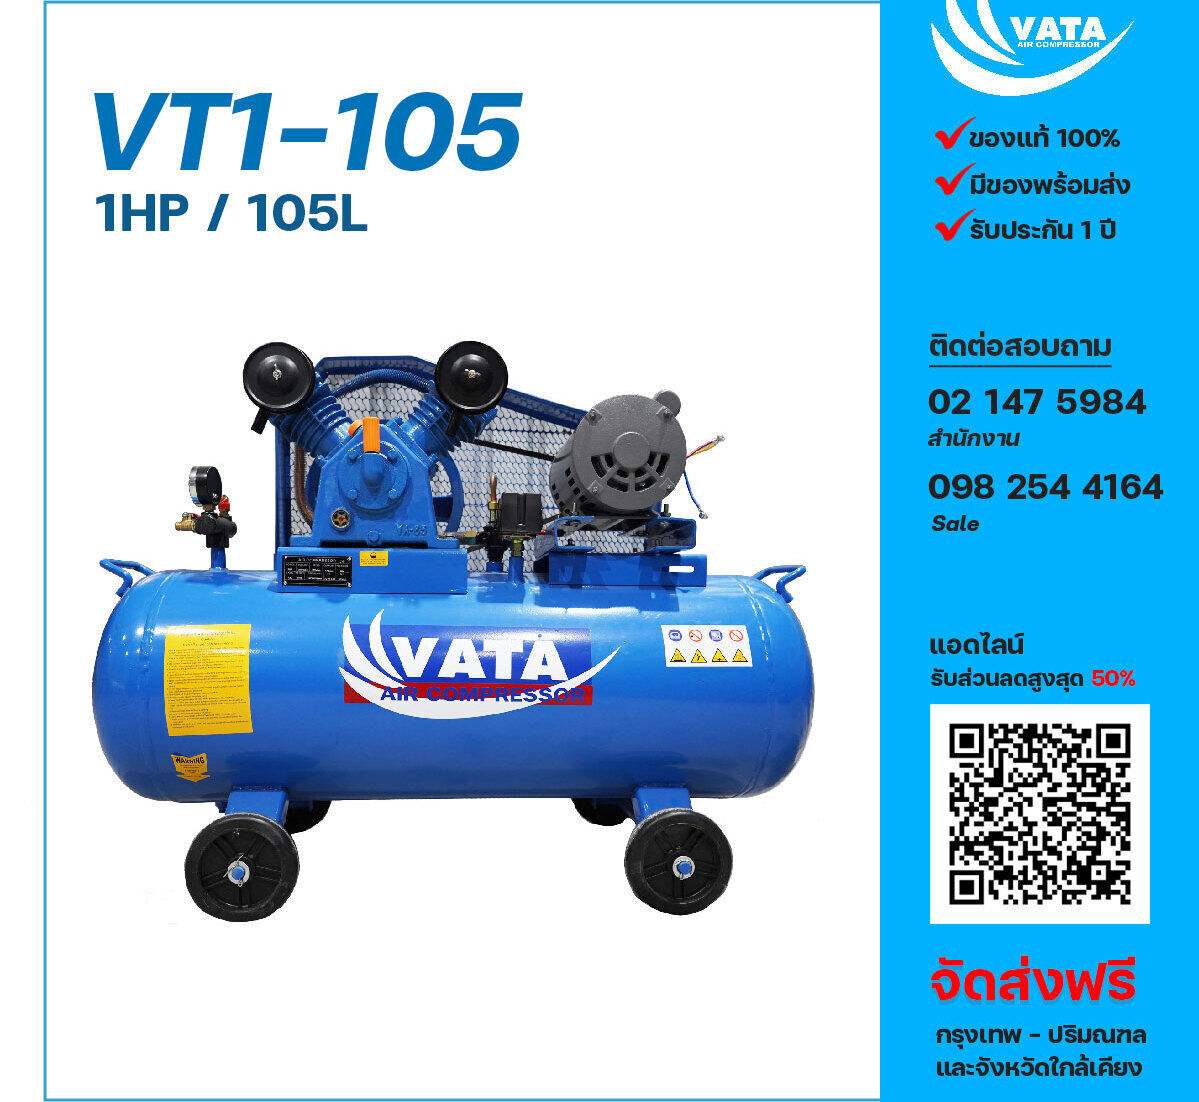 ปั๊มลมวาตะ VATA VT1-105 220V ปั๊มลมลูกสูบ ขนาด 2 สูบ 1 แรงม้า 105 ลิตร VATA พร้อมมอเตอร์ ไฟ 220V ส่งฟรี กรุงเทพฯ-ปริมณฑล รับประกัน 1 ปี